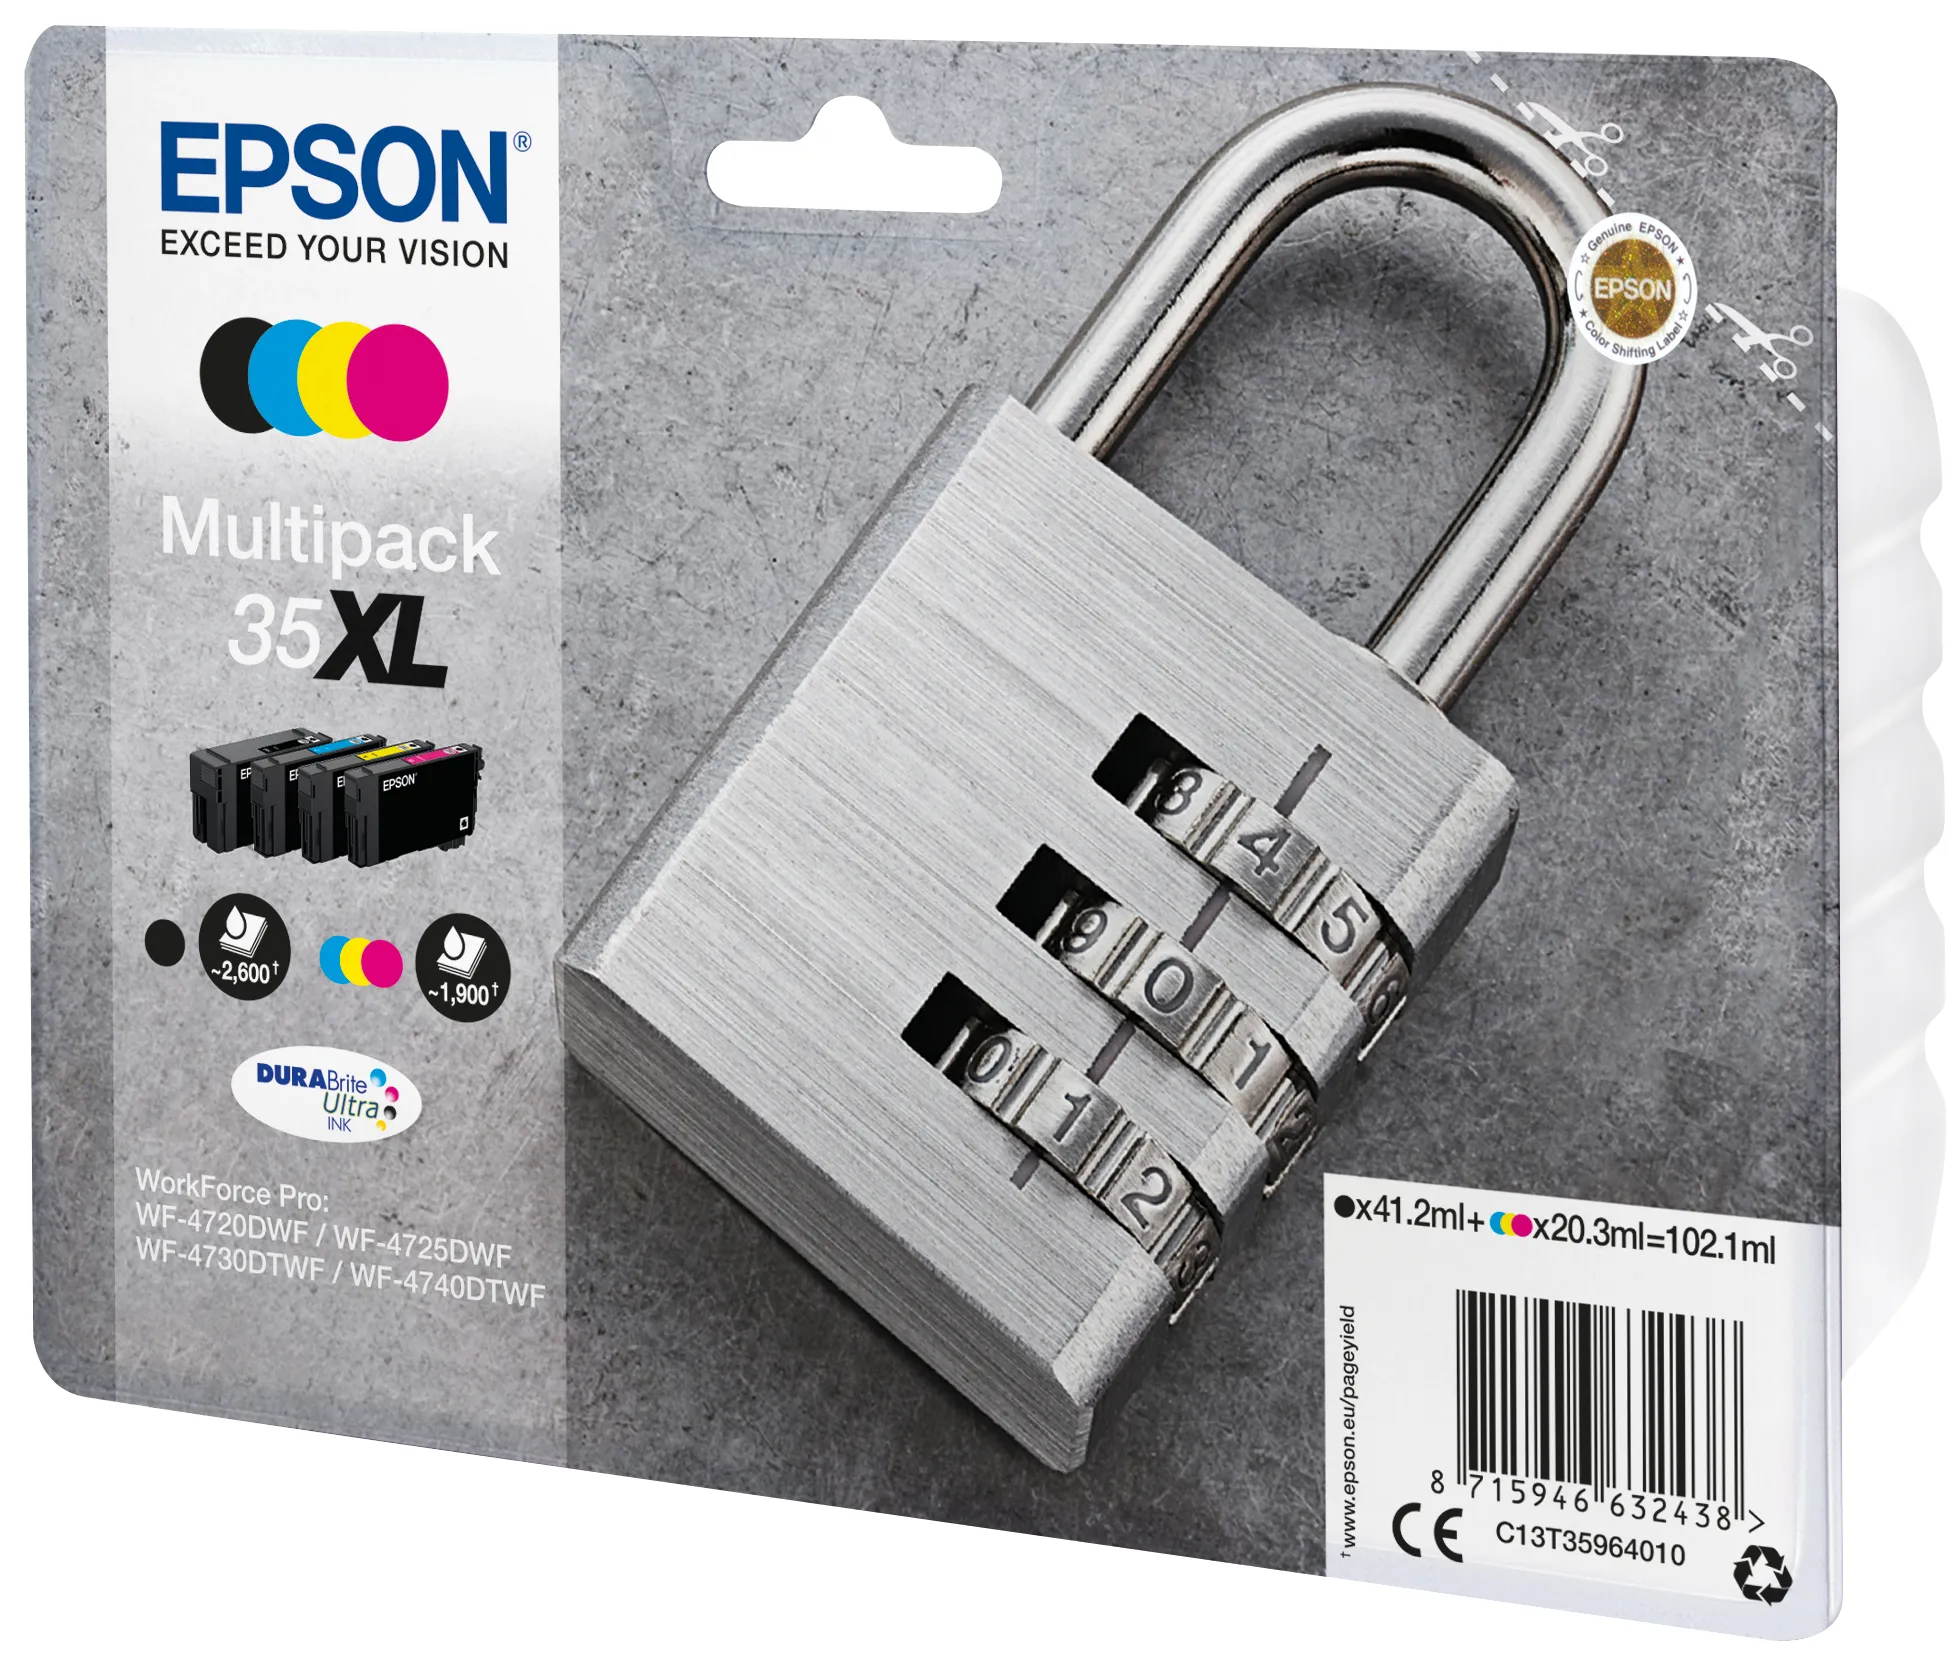 Vente Epson Padlock Multipack 4-colours 35XL DURABrite Ultra Ink Epson au meilleur prix - visuel 4